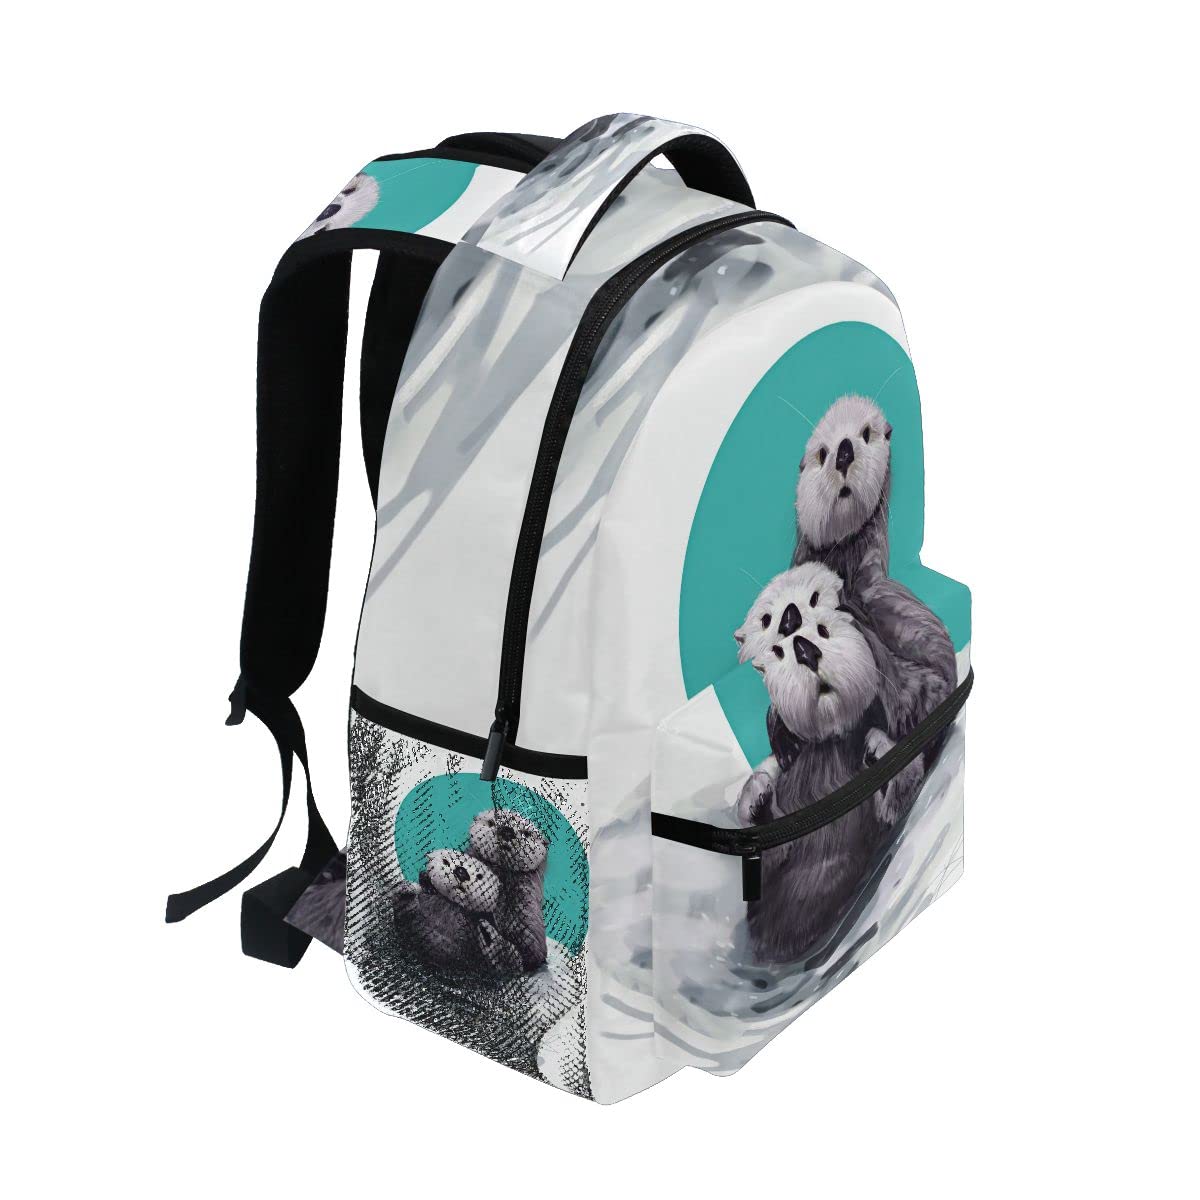 Fisyme Cute Sea Otter Backpack Laptop Bag Daypack Travel Hiking School Backpacks for Men Women Kids Girls Boys